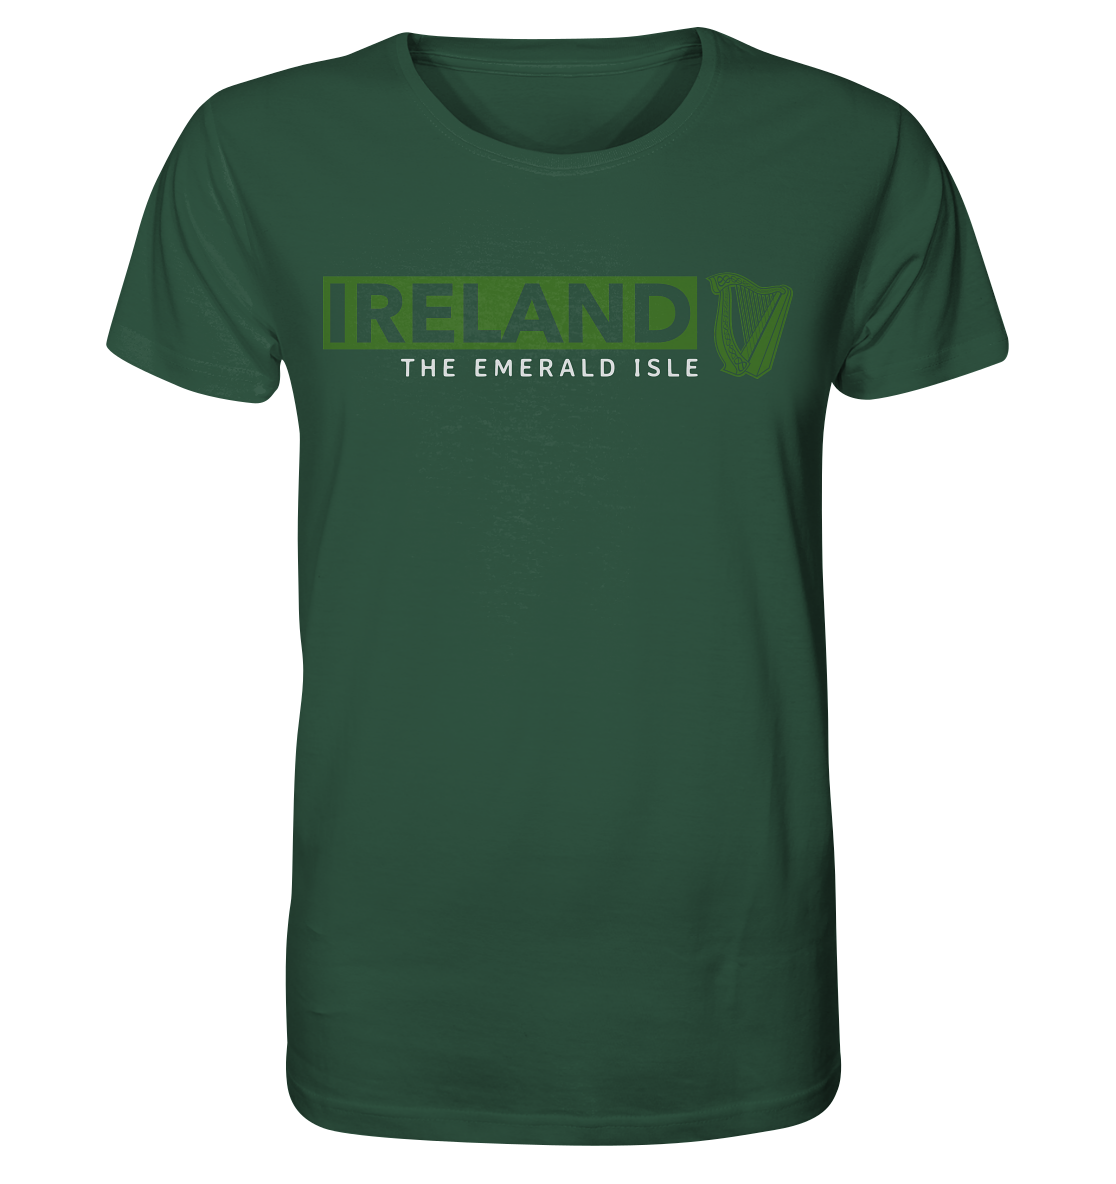 Ireland "The Emerald Isle / Harp" - Organic Shirt